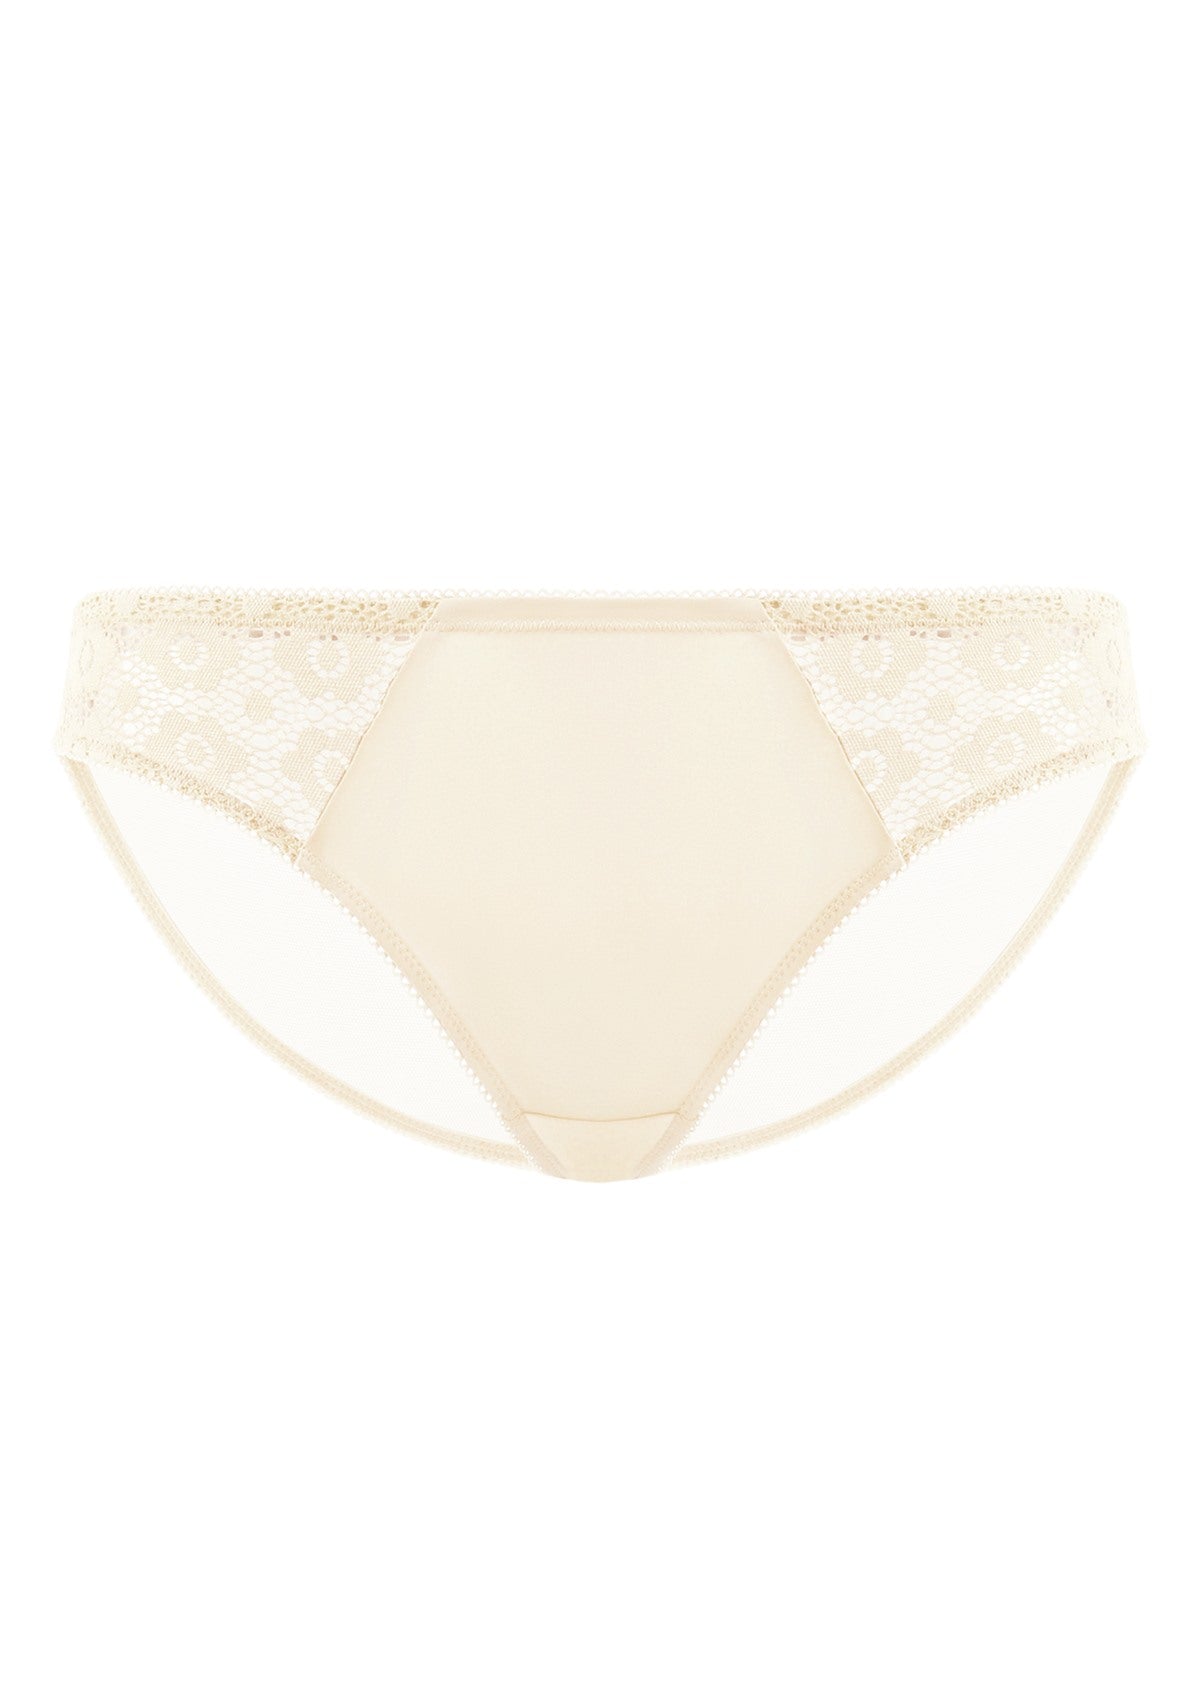 HSIA Serena Comfortable Trendy Lace Trim Bikini Underwear - XL / Champagne